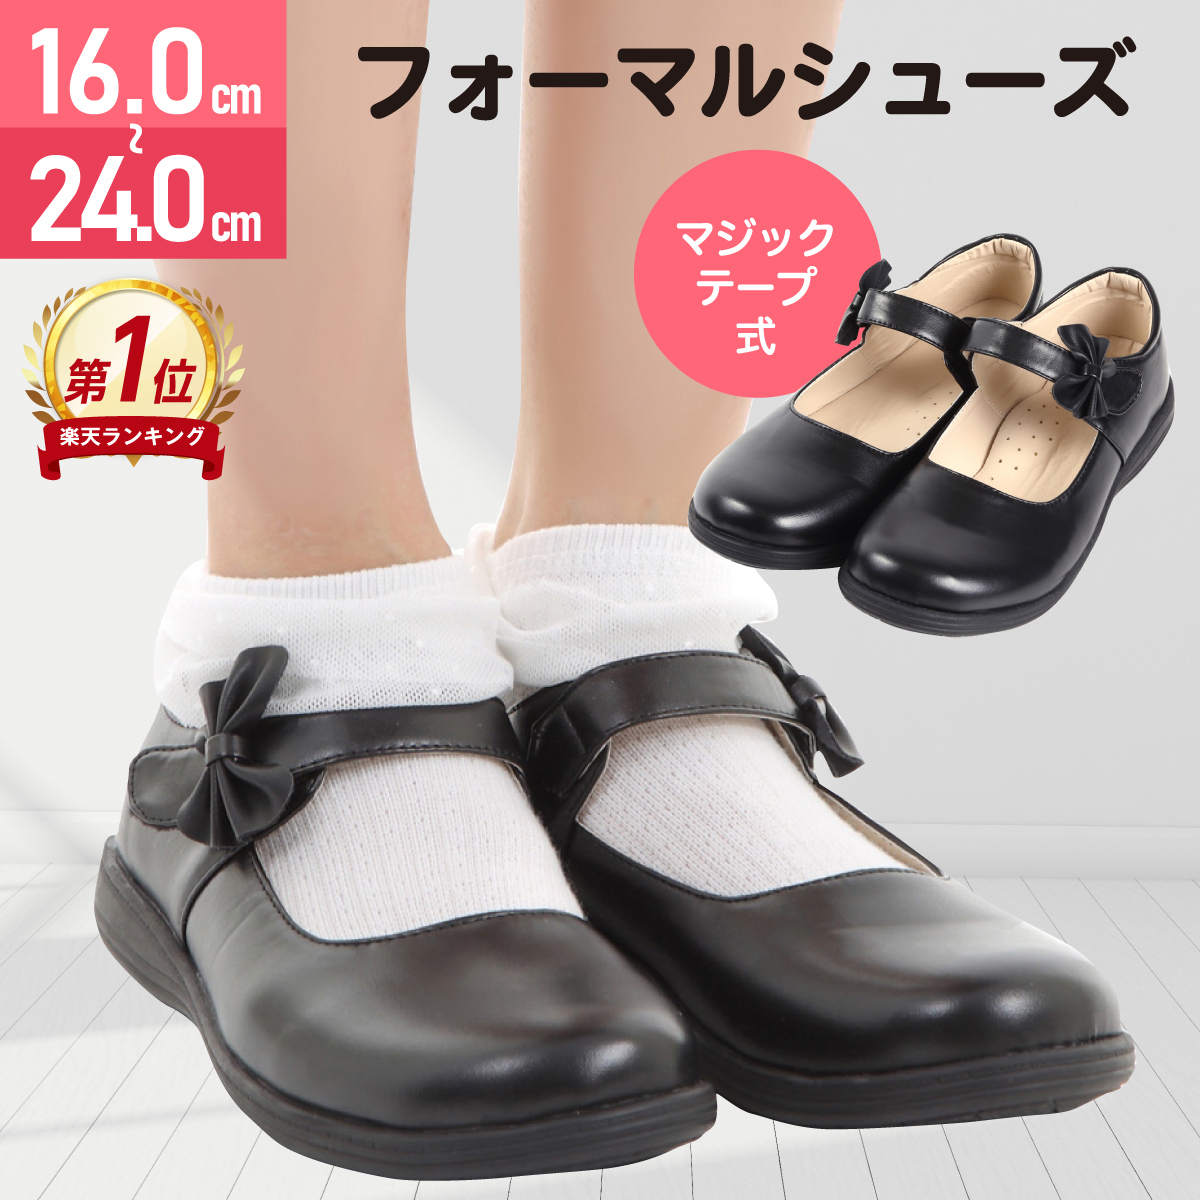 セール商品 フォーマル 子供 靴 男女兼用 おしゃれ 韓国 キャメル 15.0cm